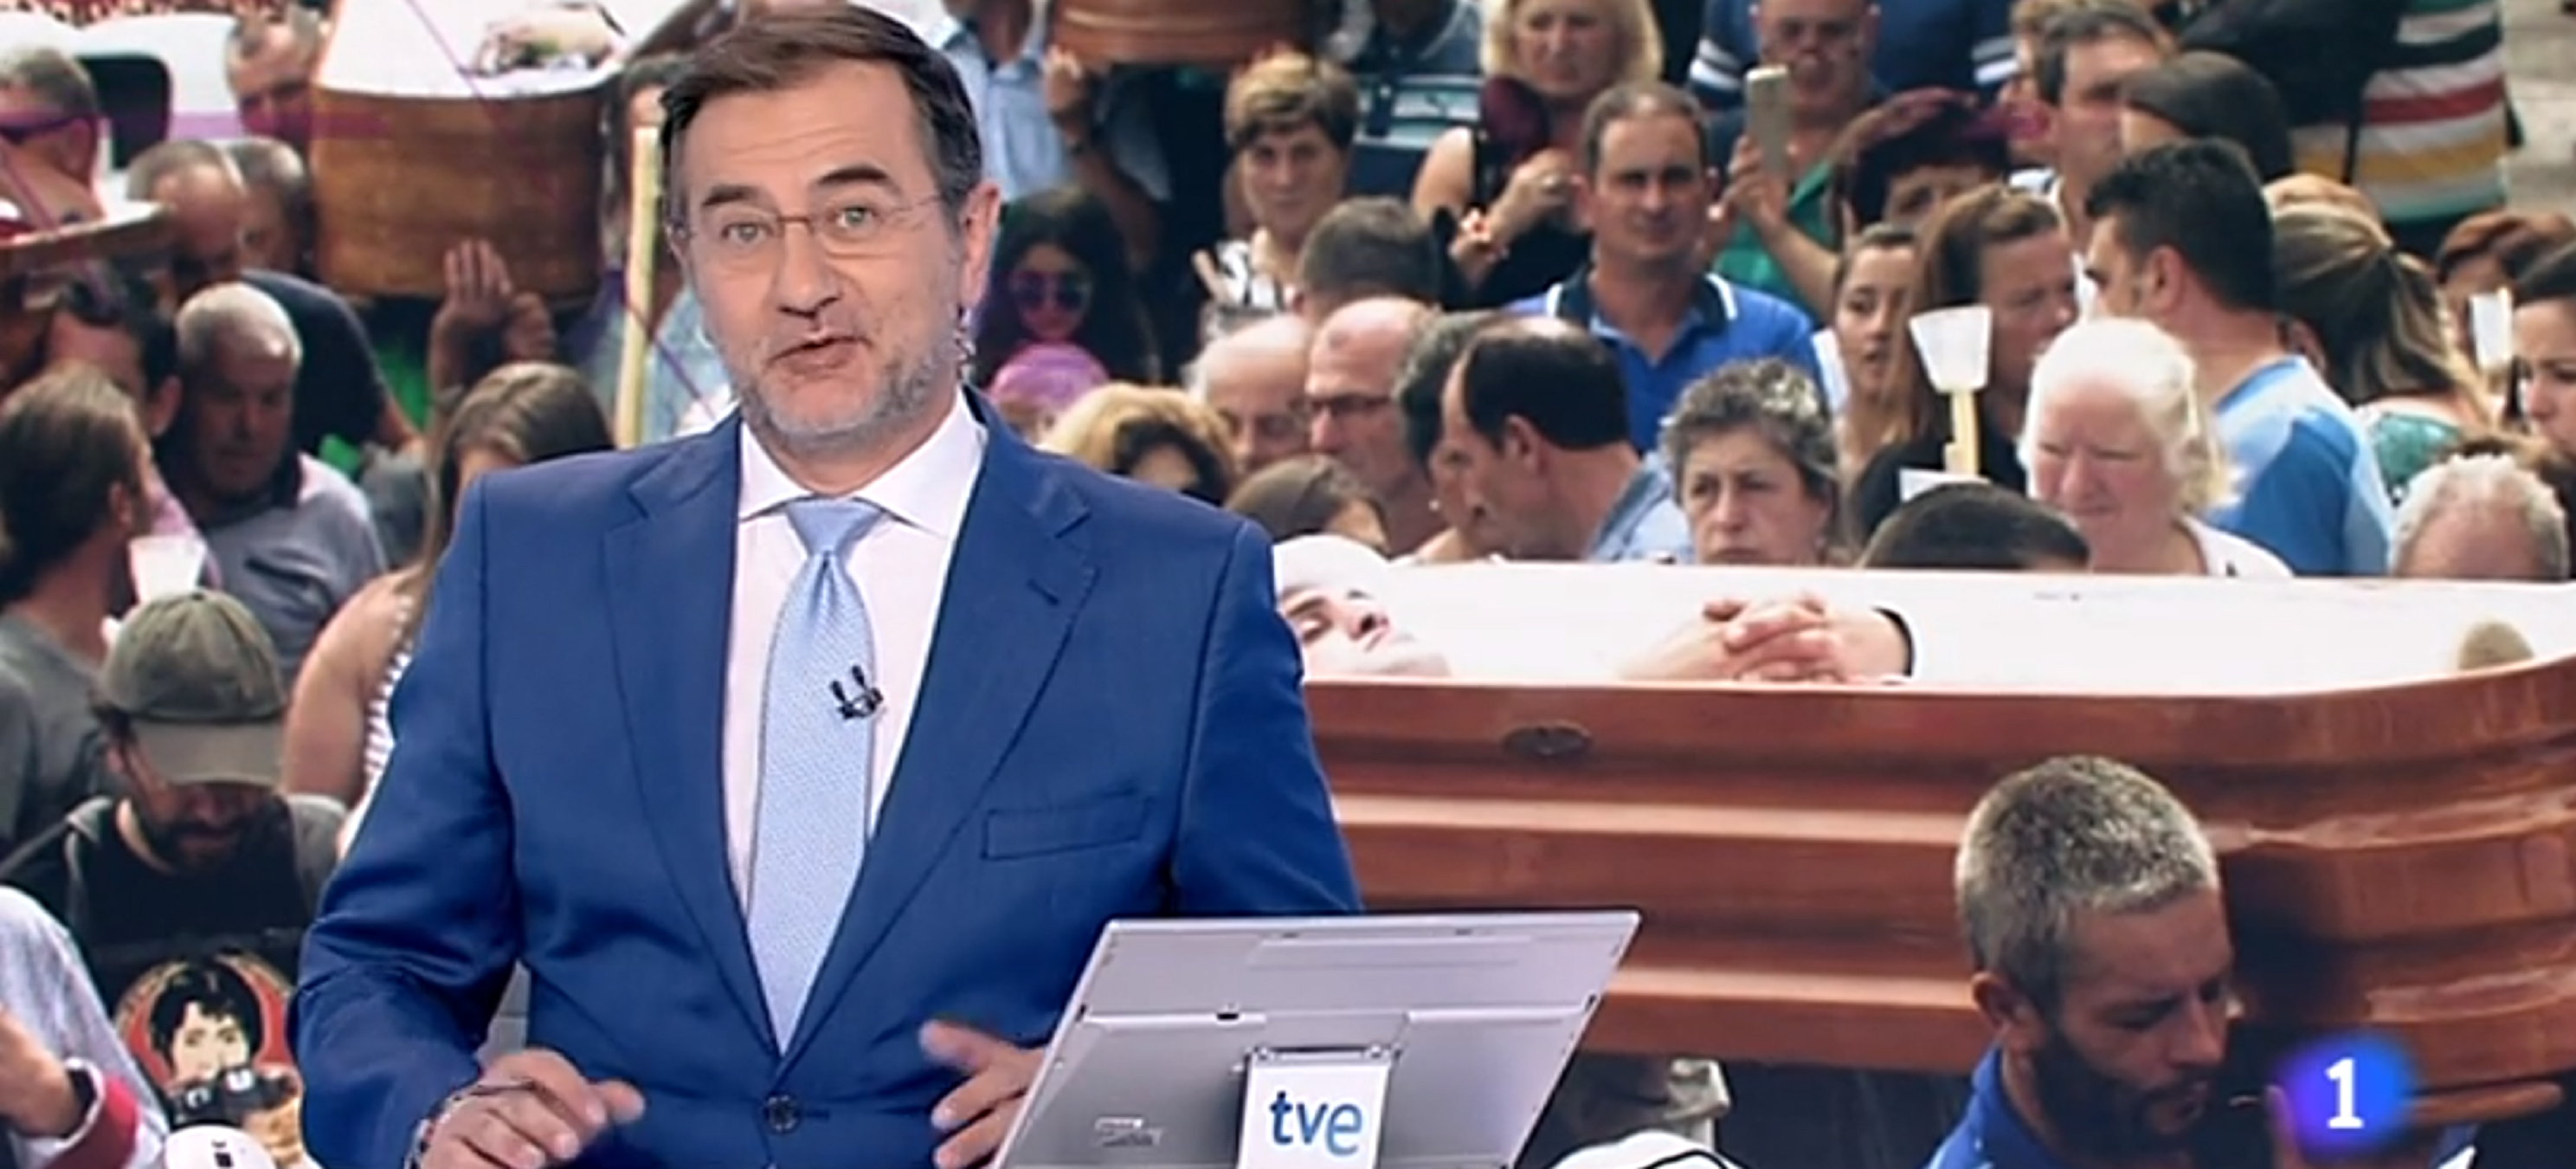 Purga pepera a TVE: així diu adeu el presentador ultra del Telediario